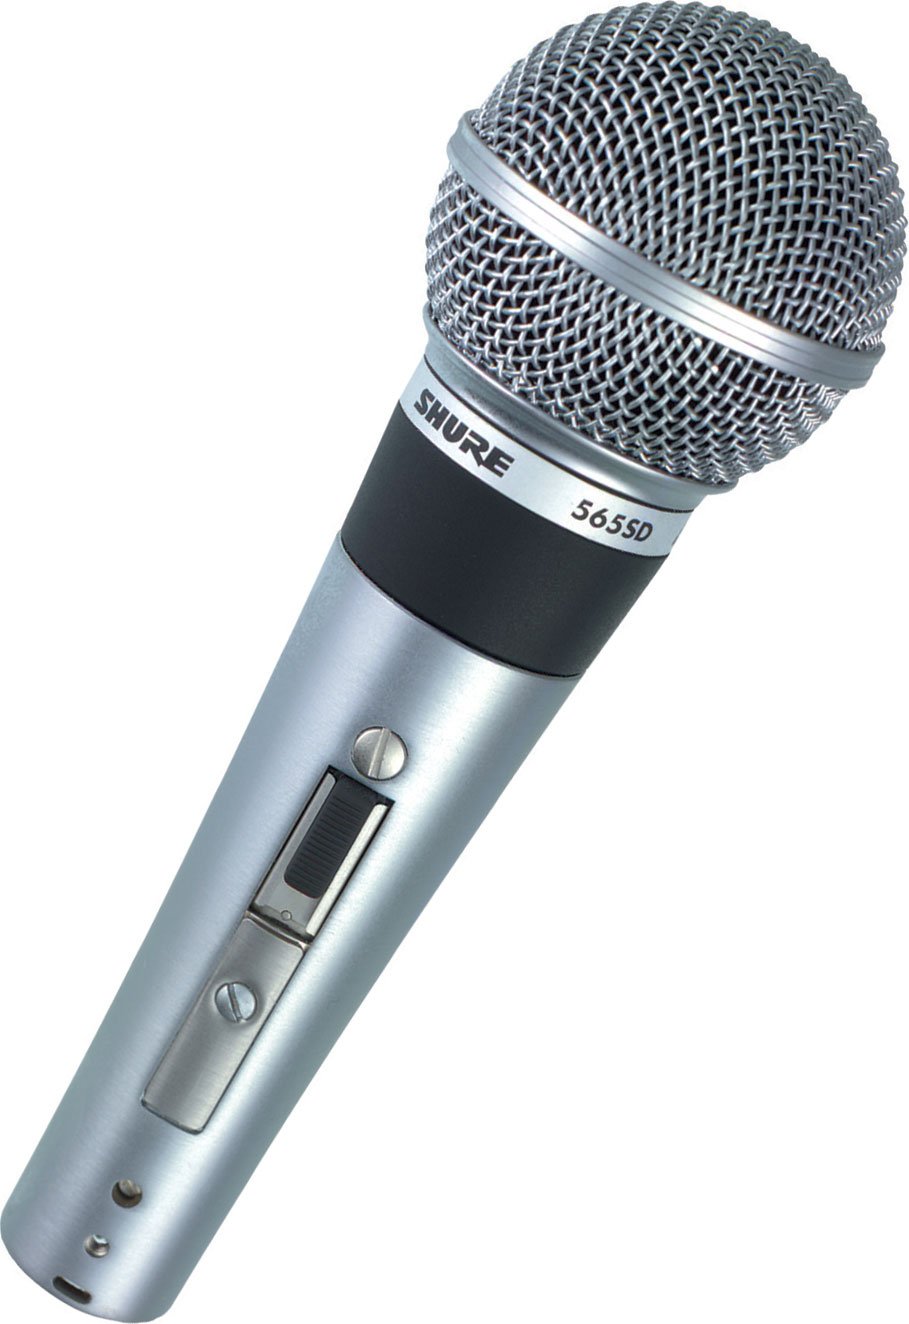 Вокальный микрофон Shure 565SD-LC